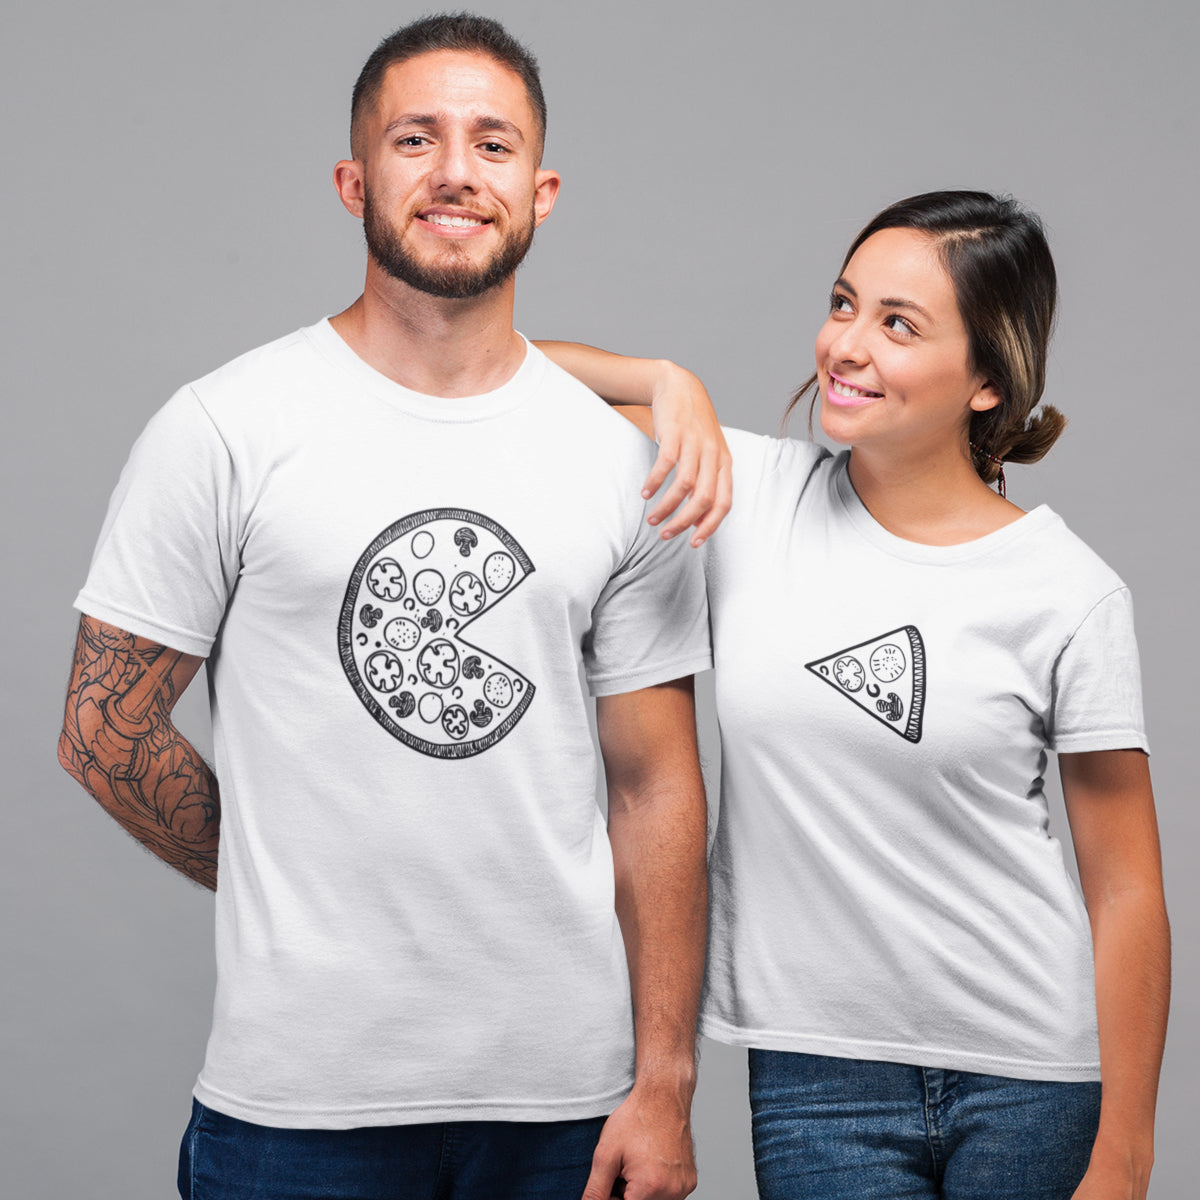 Balti unisex marškinėliai poroms su piešiniais "Pica“ Moteriškas dizainas